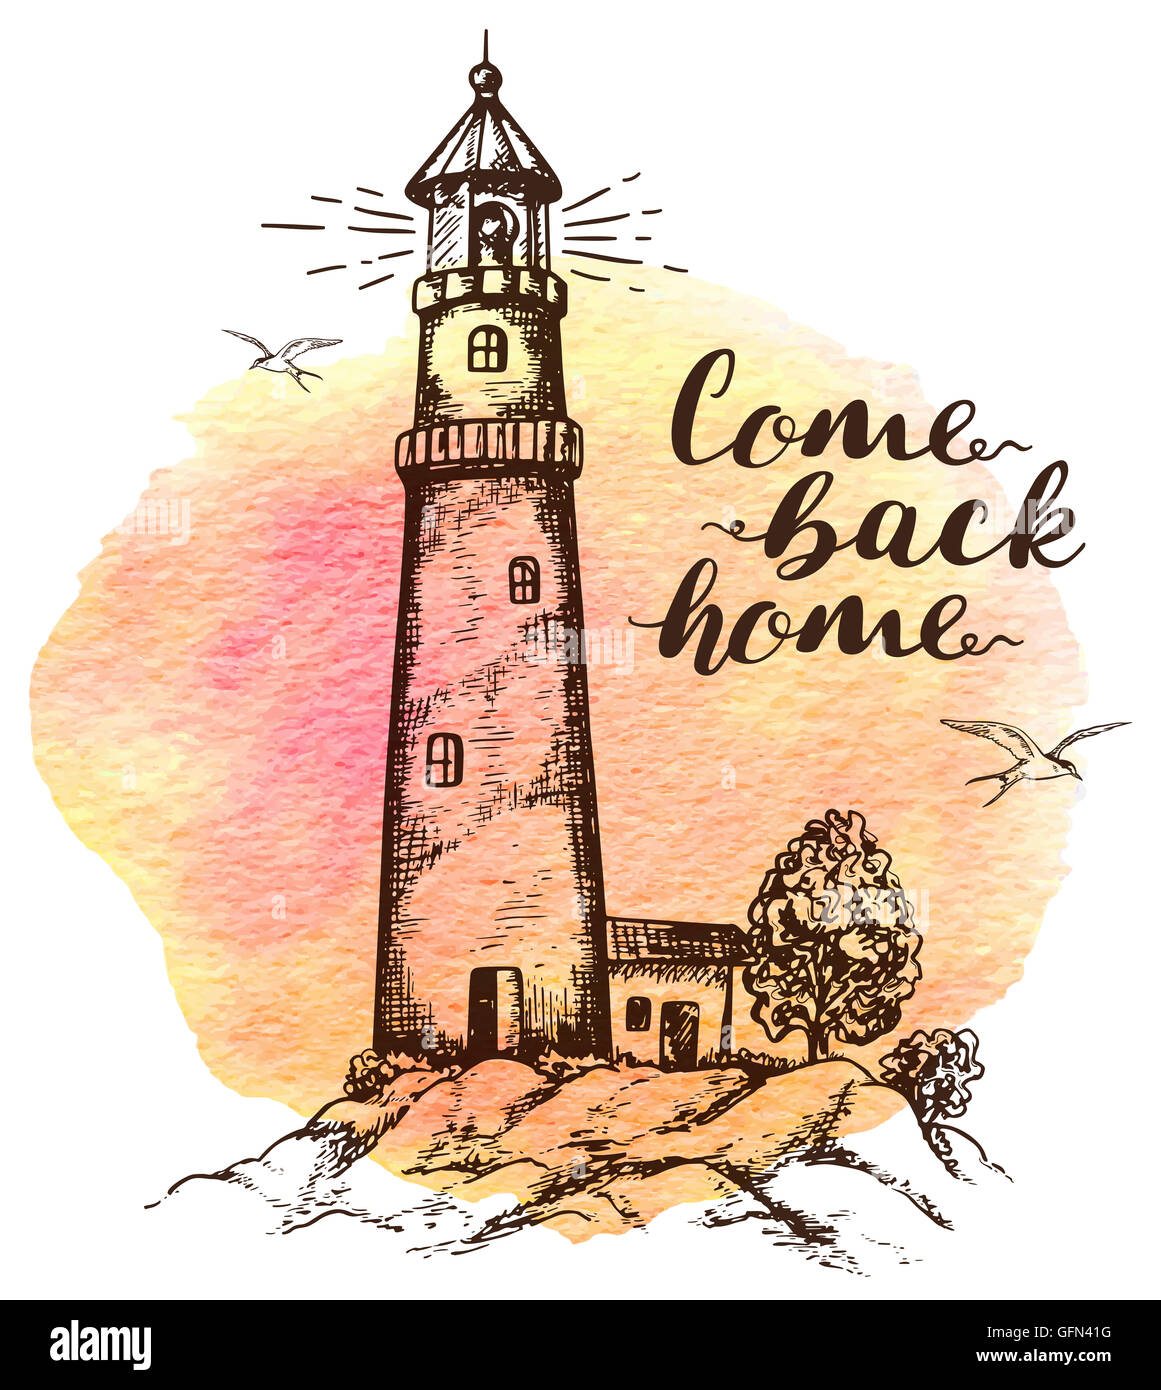 Arrière-plan dessiné à la main avec phare dans le style vintage. 'Come Back home' lettrage. Banque D'Images